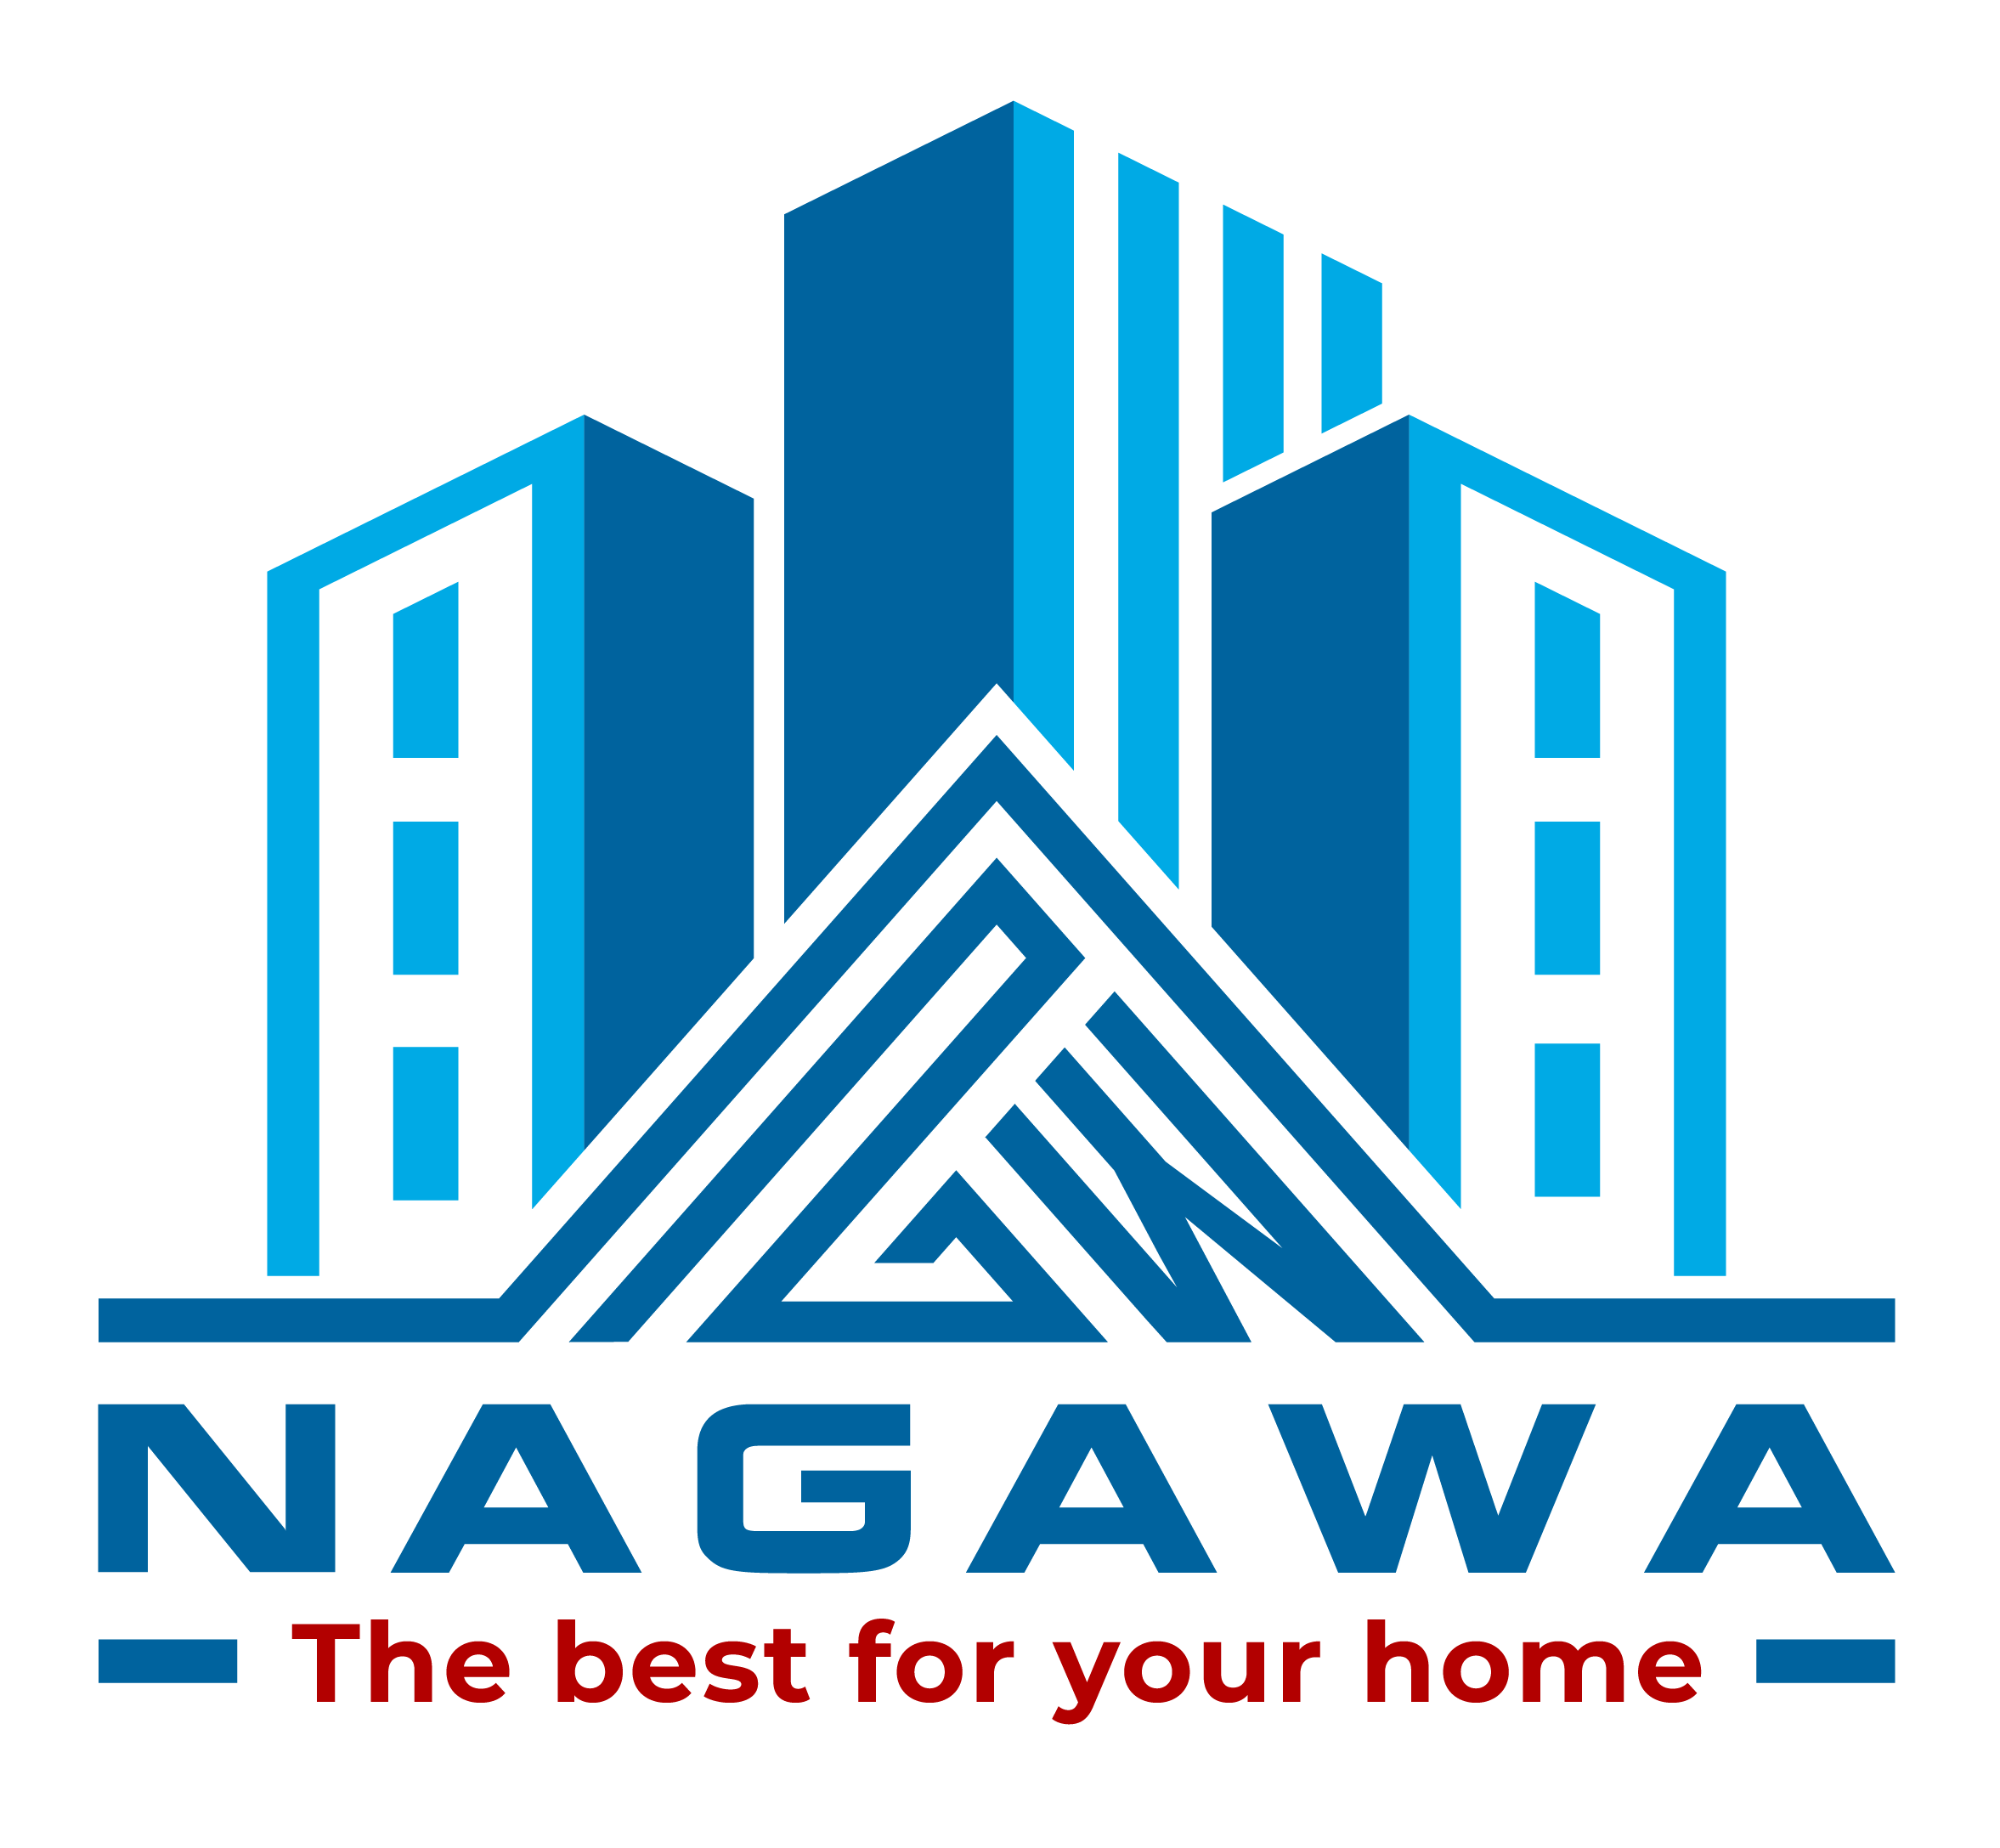 NAGAWA